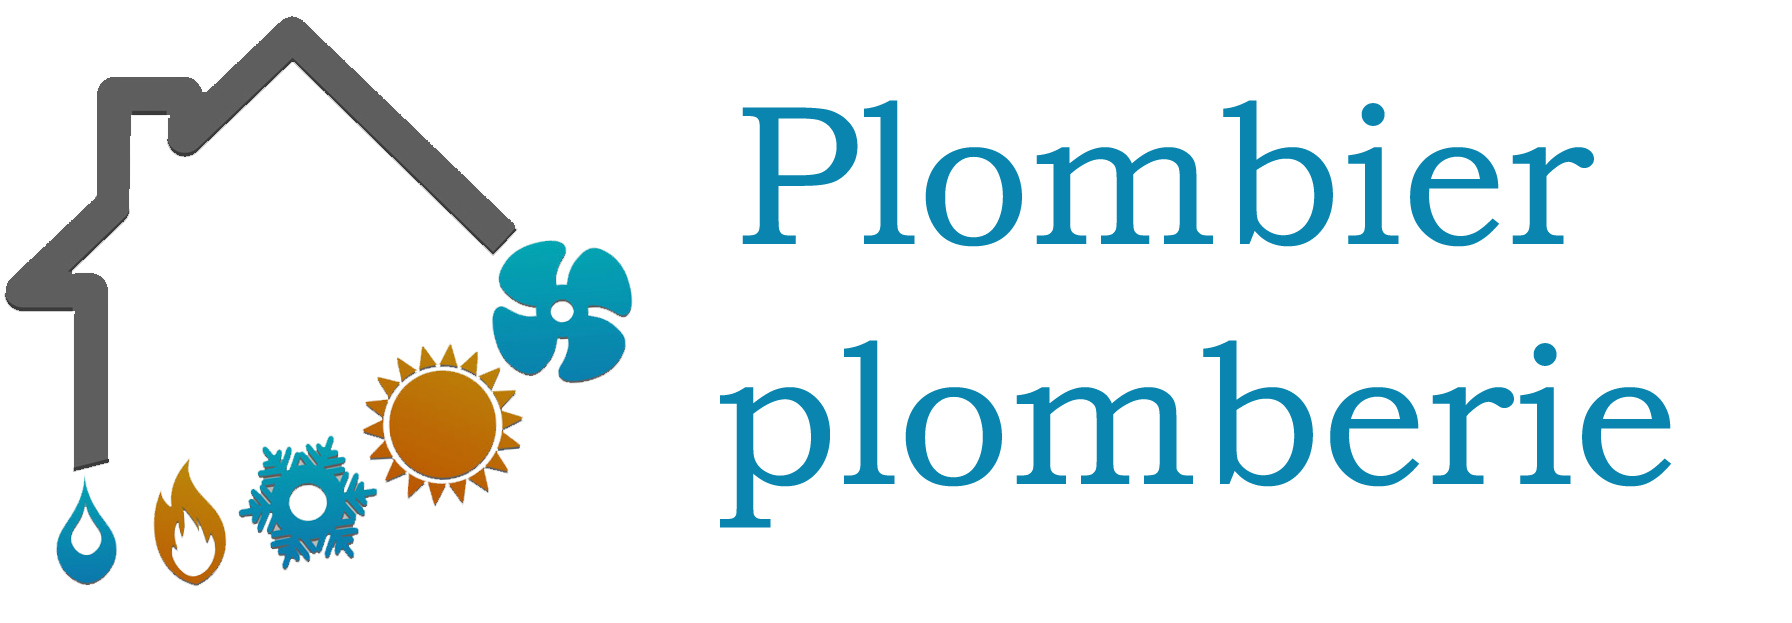 Plombier.png